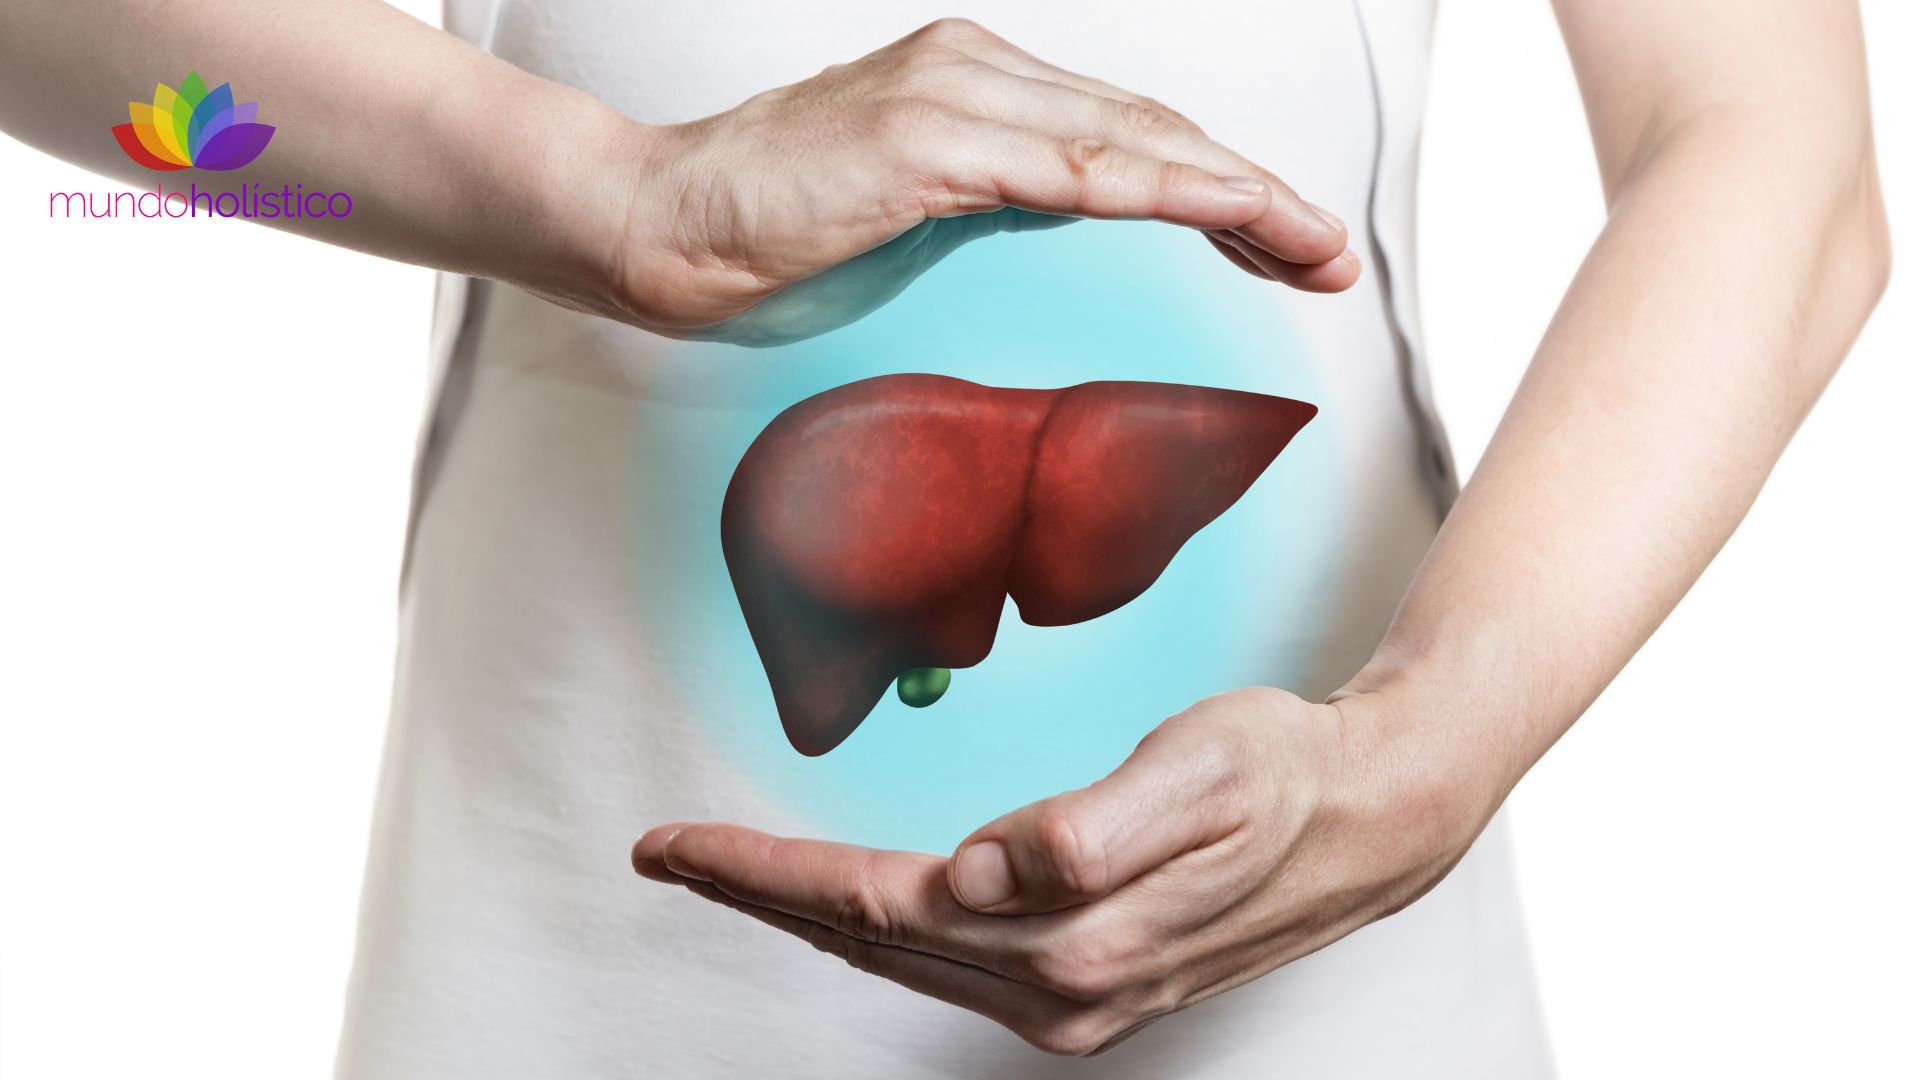 El hígado según la Medicina Tradicional China